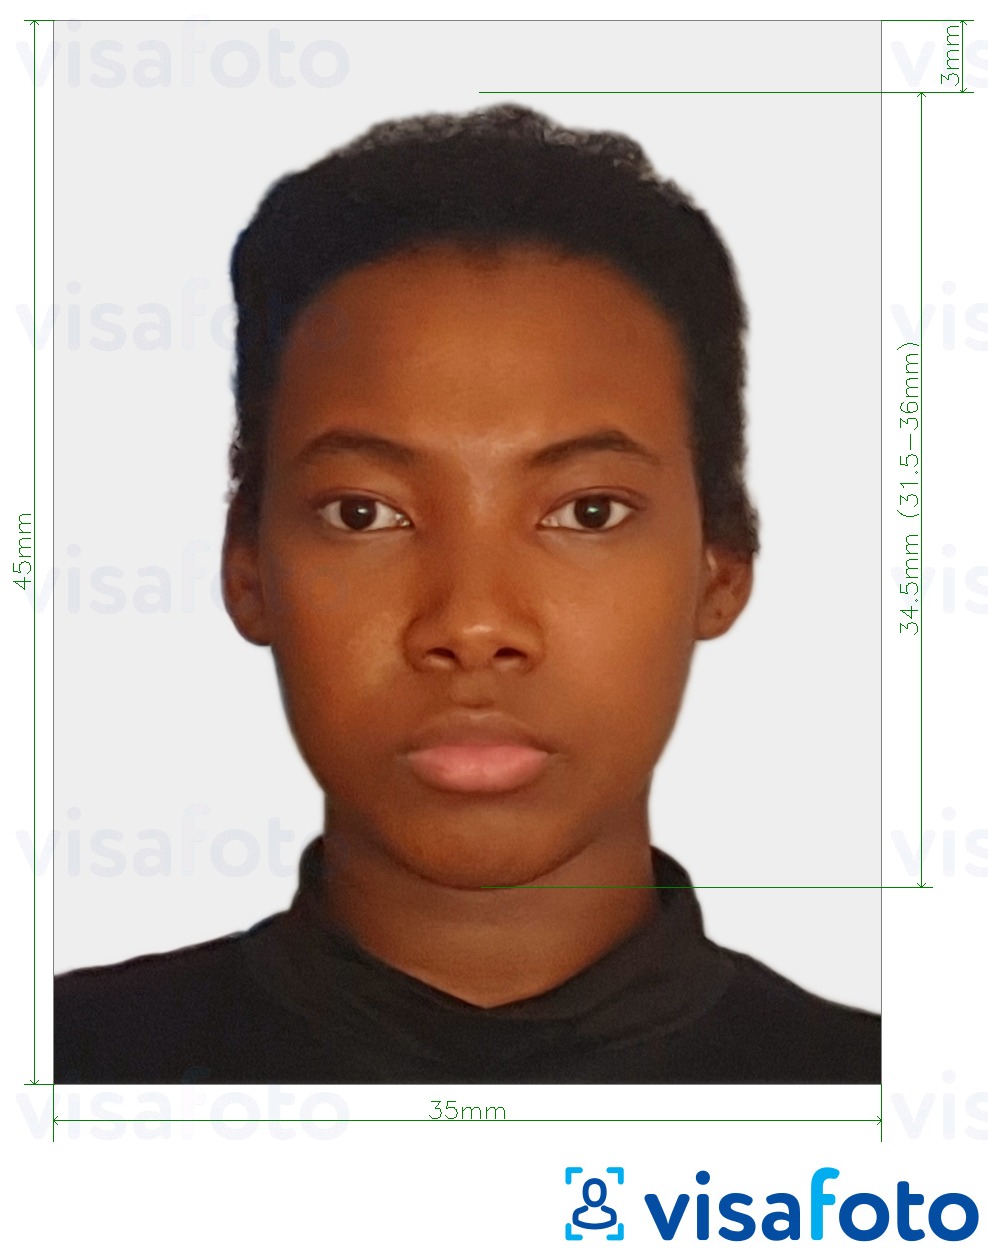 Ejemplo de foto para Visa de Surinam en línea con la especificación del tamaño exacto